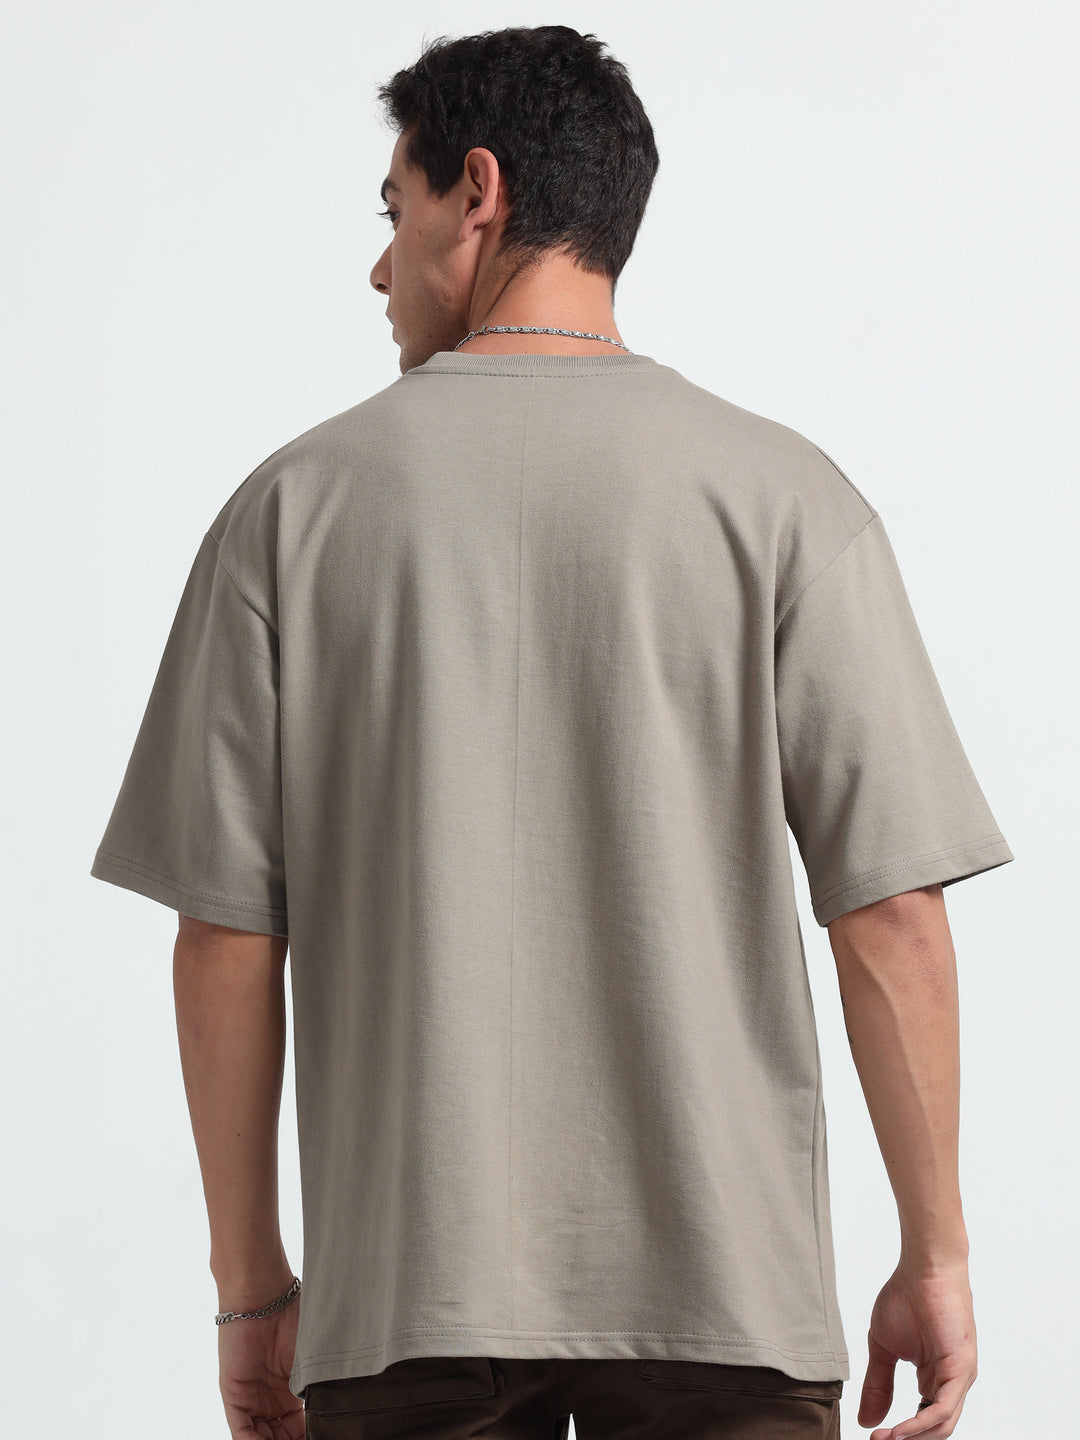 240GSM Unisex Sponge Colour Cotton Oversized Tshirt